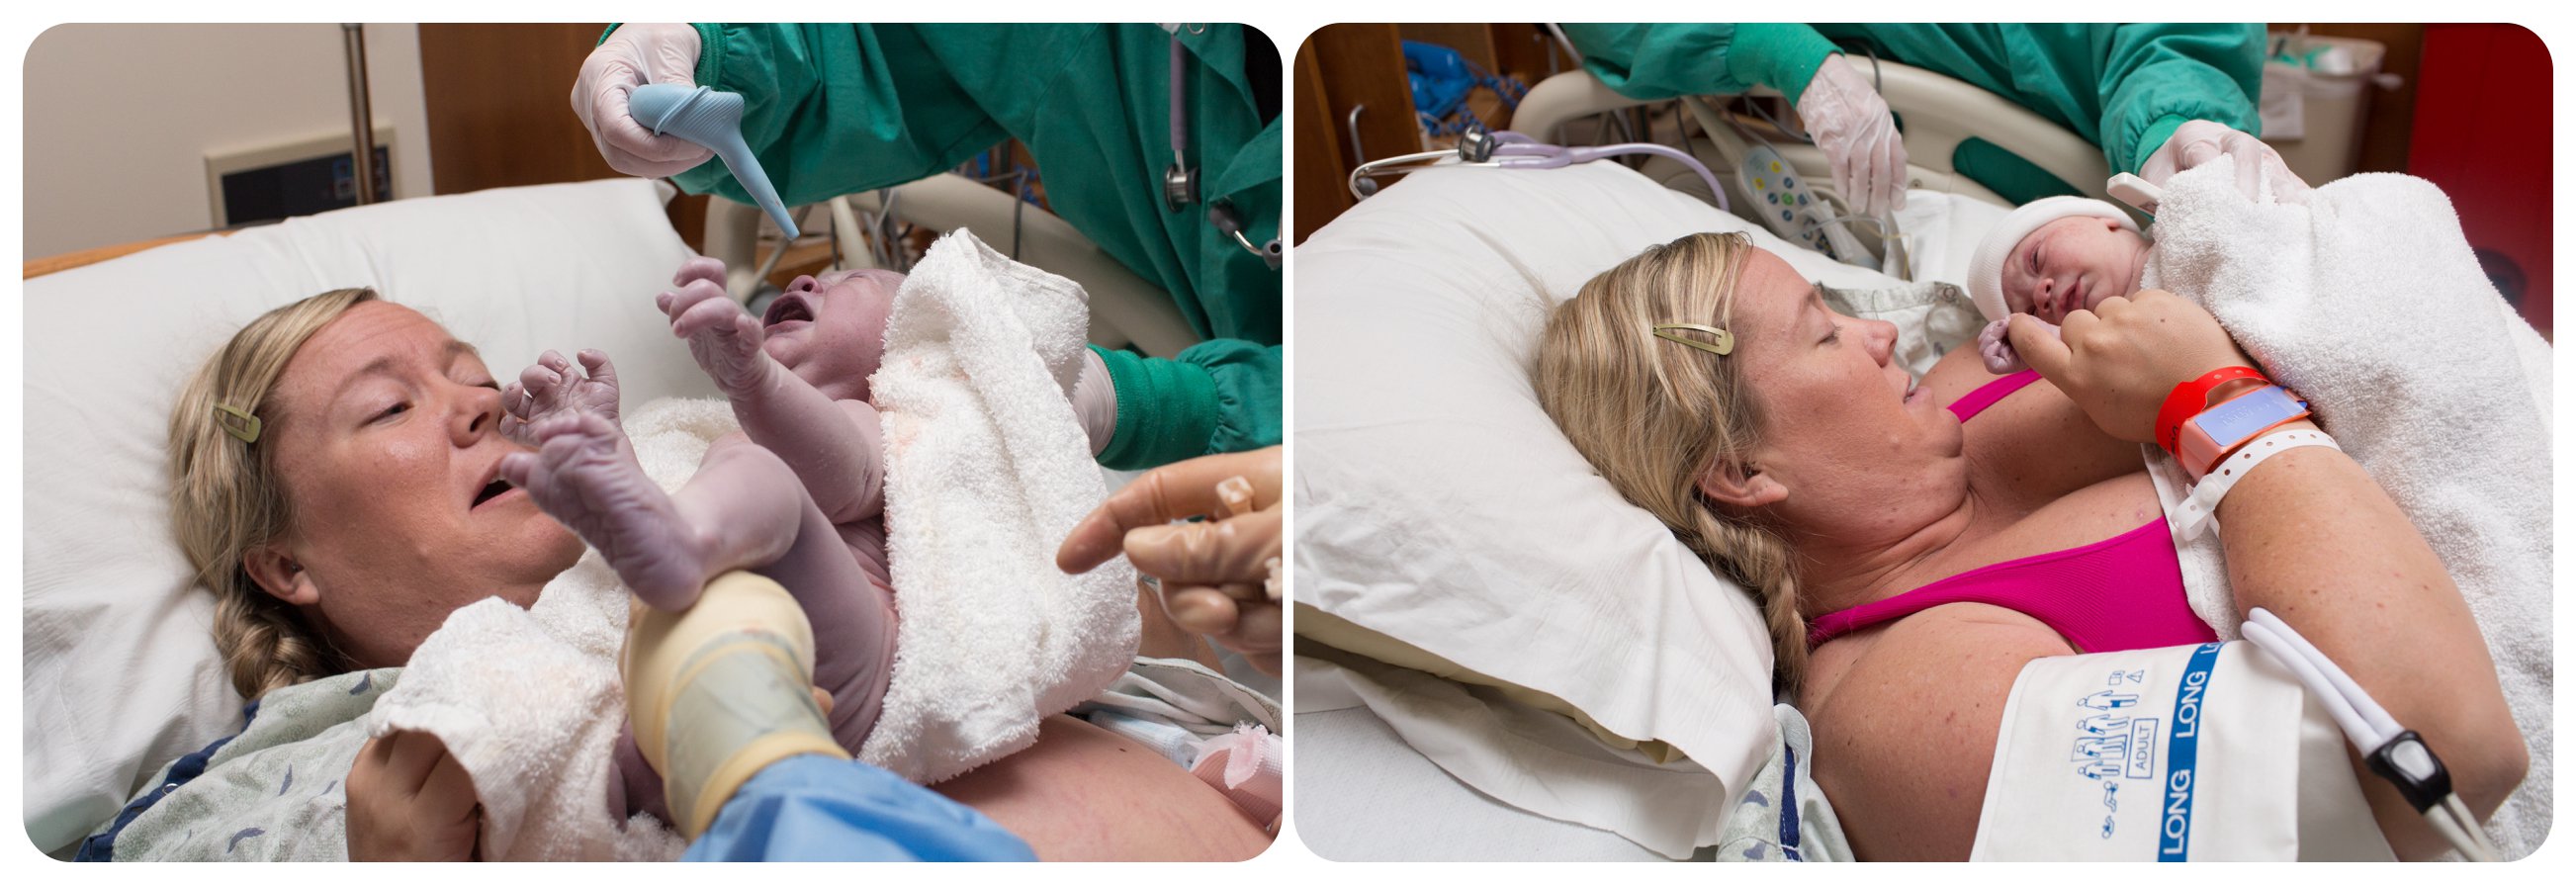 Birth Photography an unassisted birth at Avista Hospital Lafayette Baby Boy Rhys